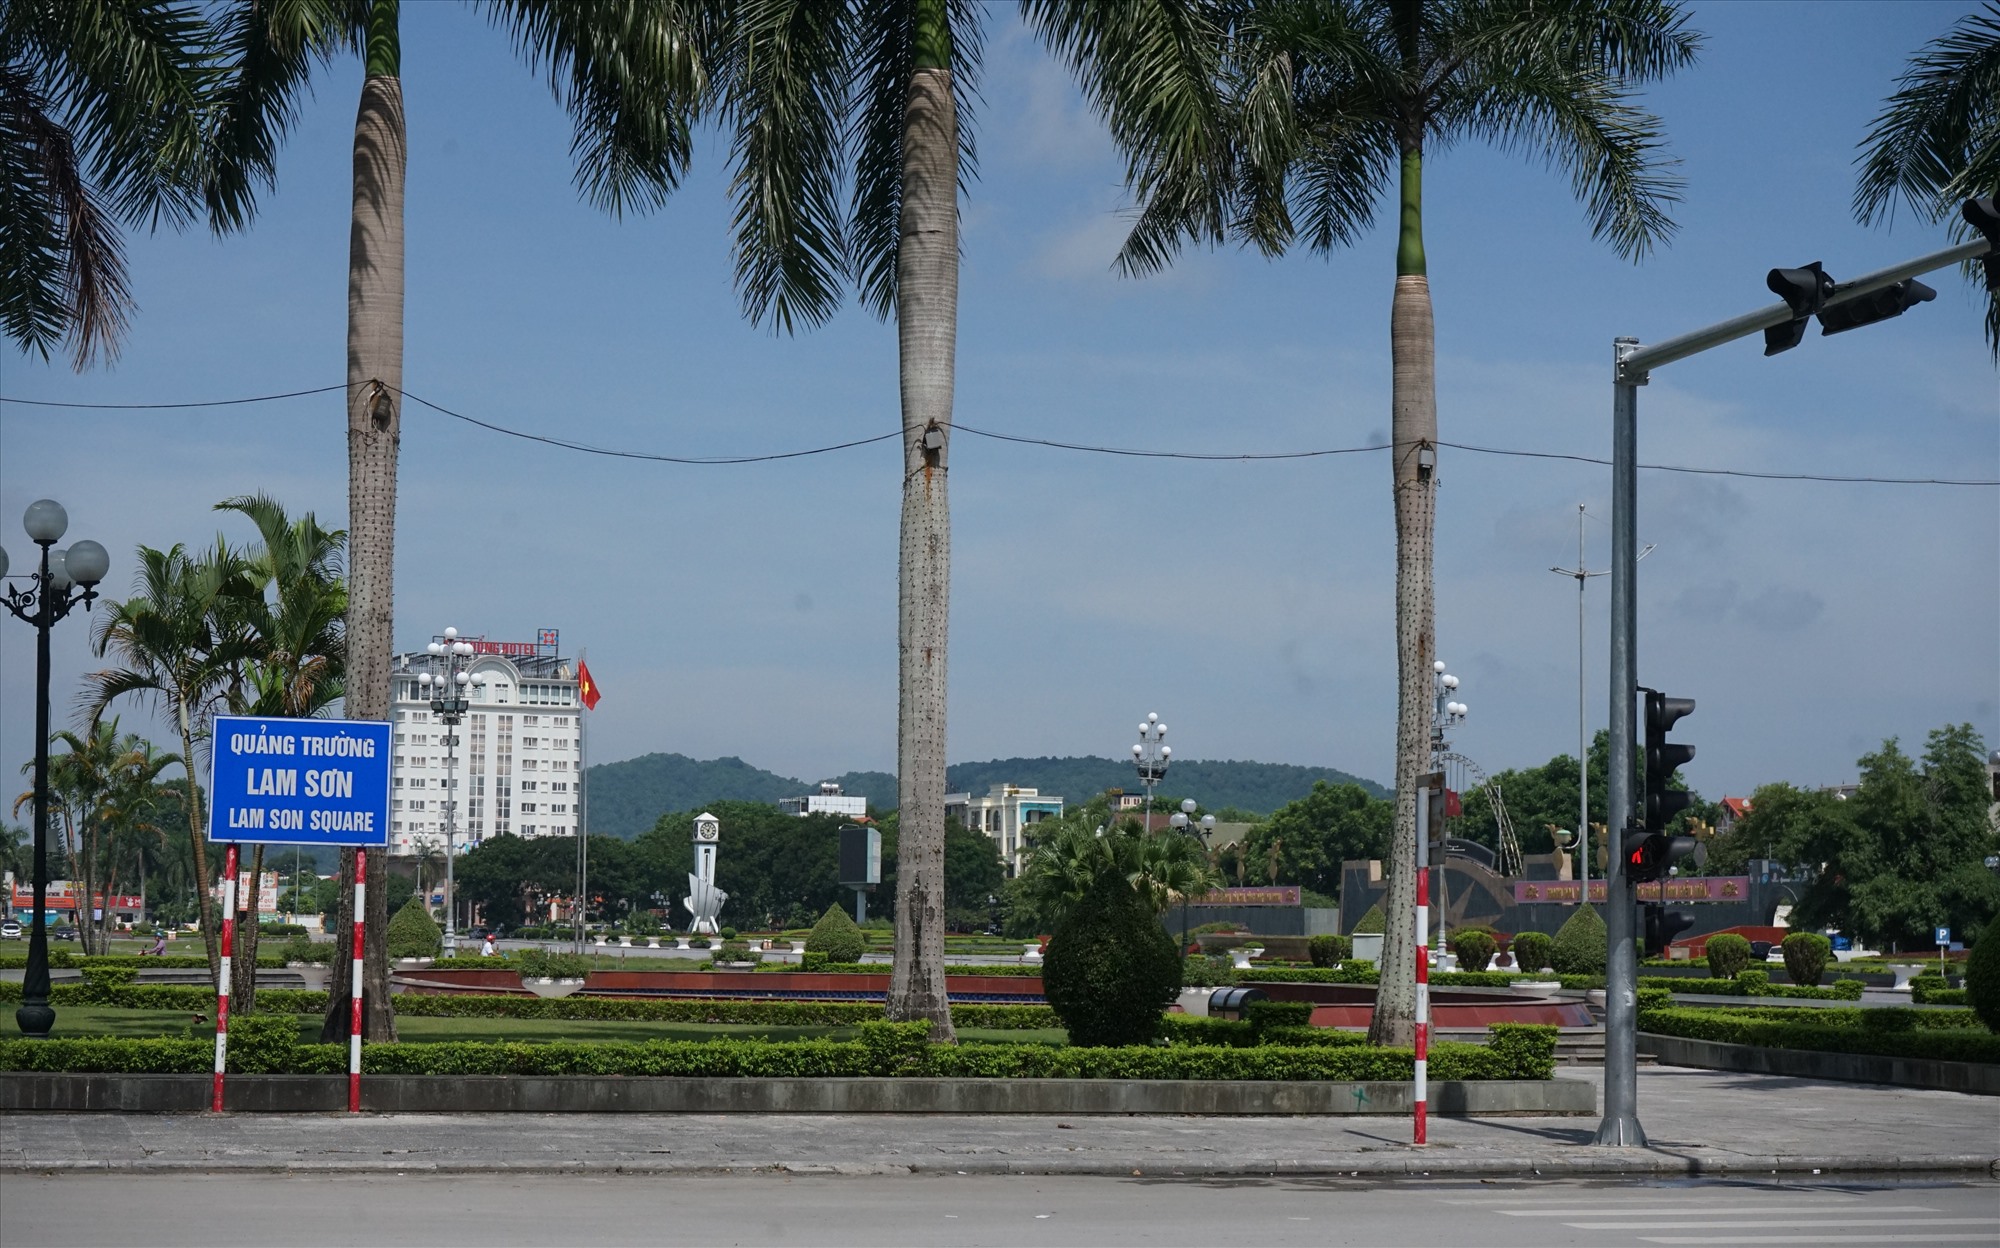 Dự án trên cũng nằm gần ngay quảng trường Lam Sơn, TP.Thanh Hóa. Ảnh: Quách Du